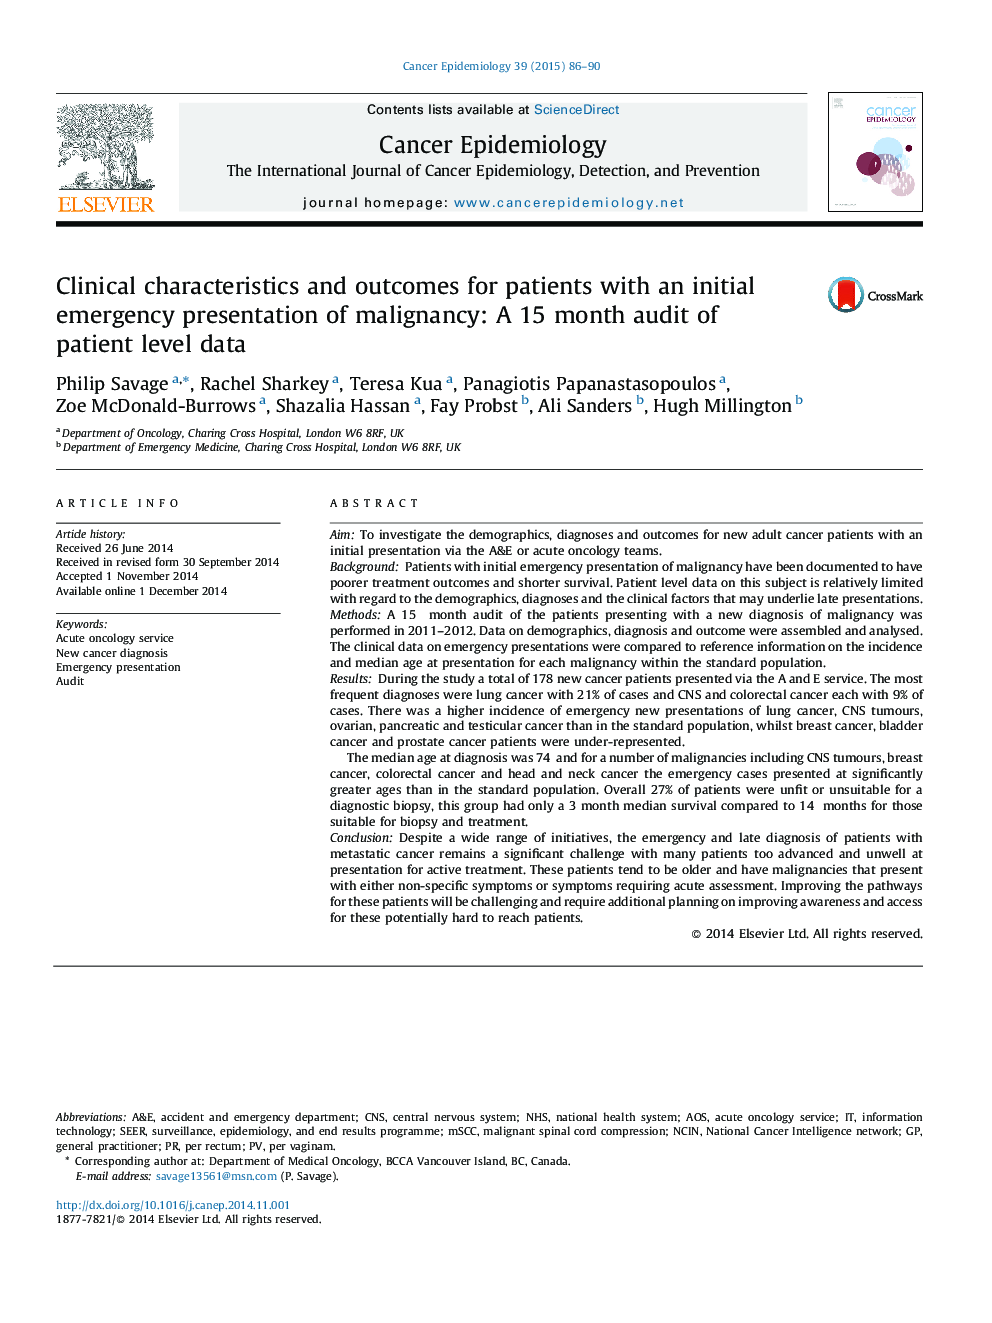 ویژگی های بالینی و نتایج بیماران با ارائه اورژانس اولیه بدخیمی: یک حسابرسی 15 ماهه از اطلاعات بیمار 